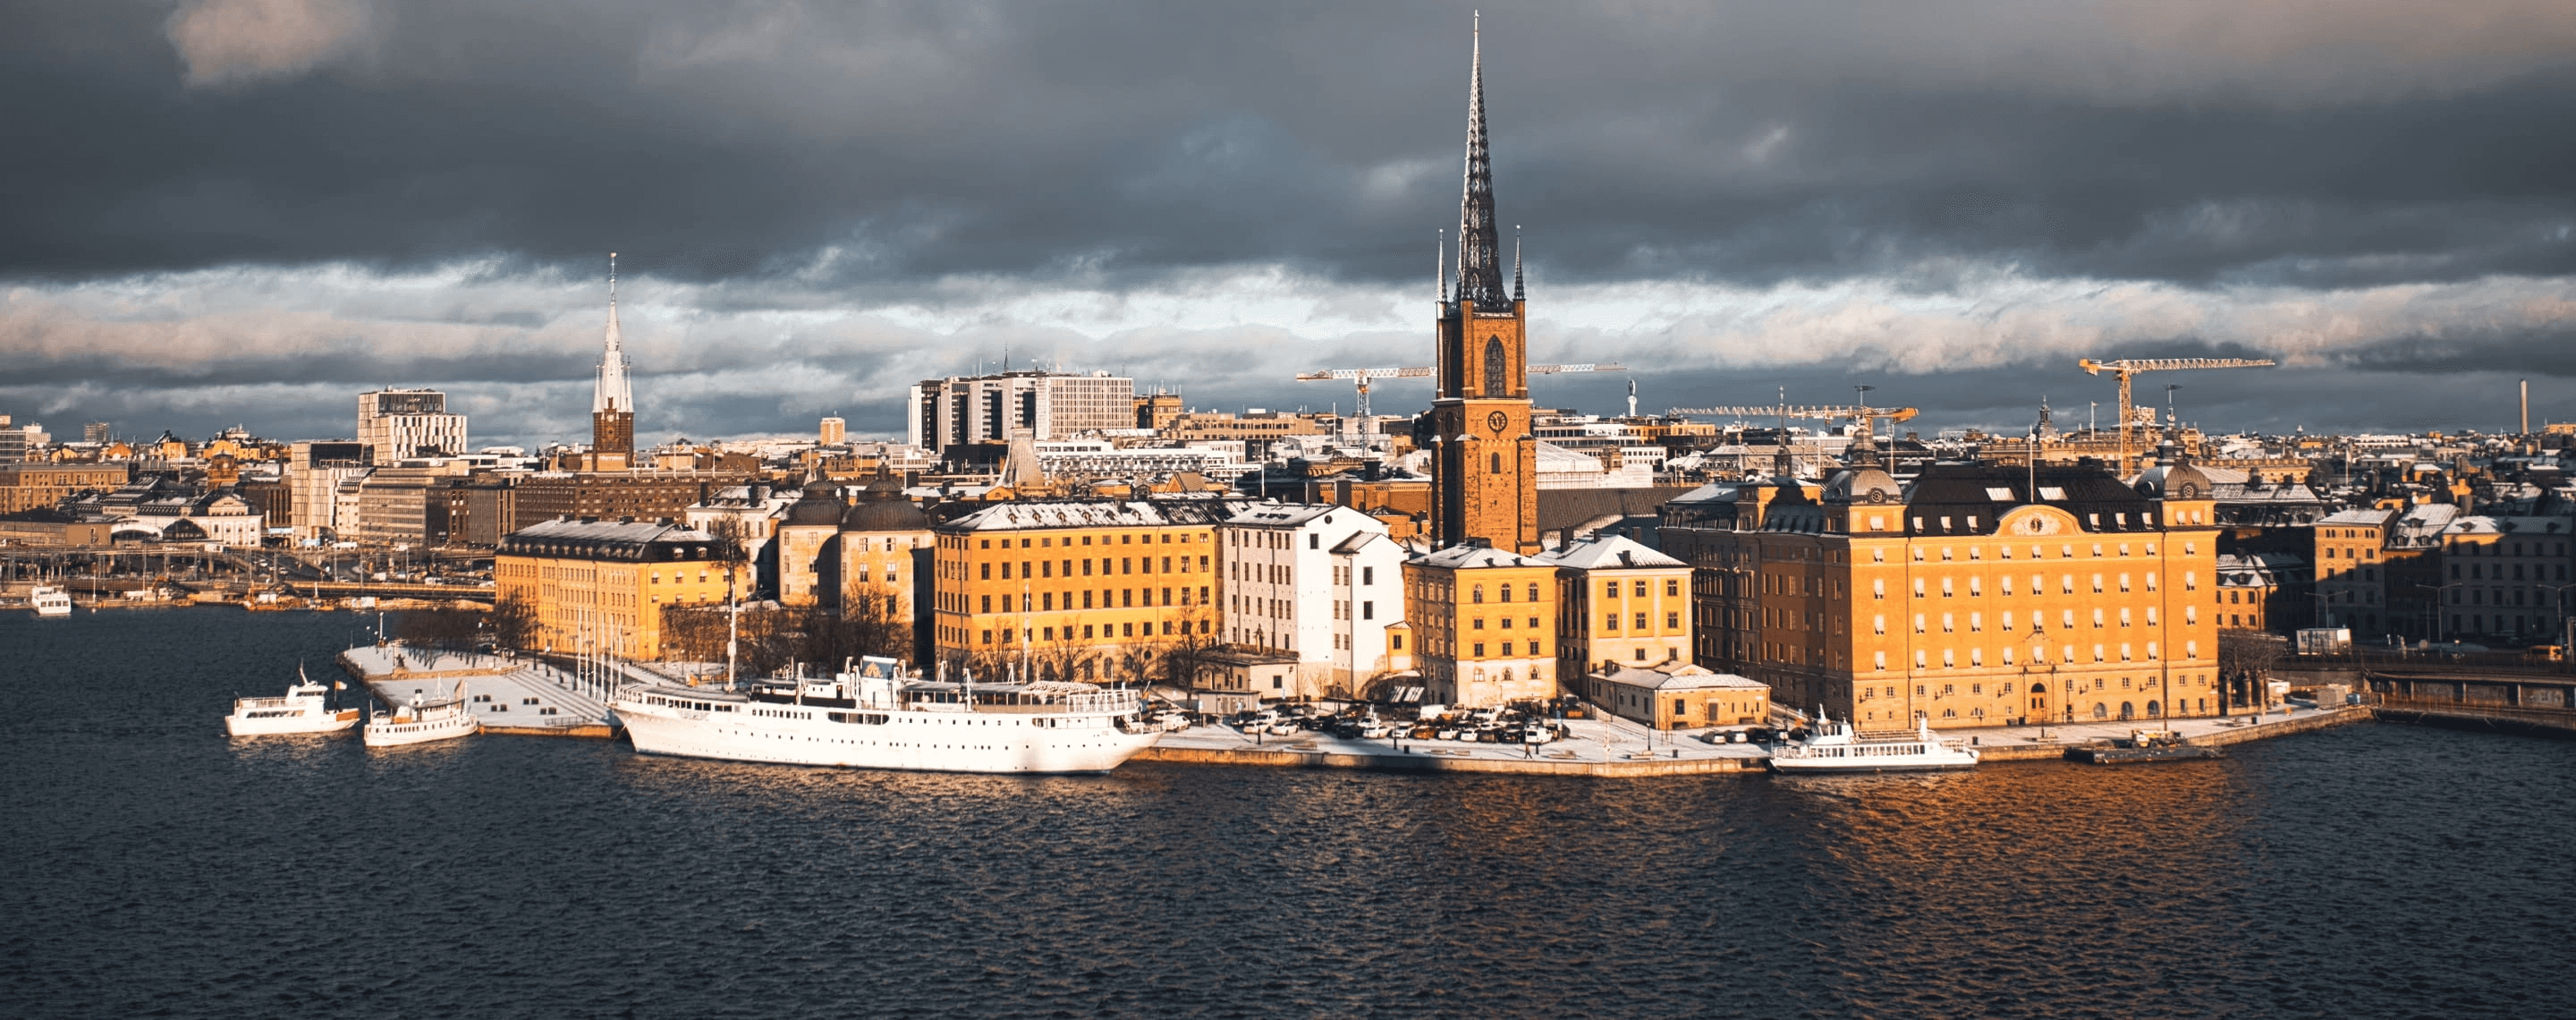 Stockholm Panorama bei Sonnenschein, Schweden